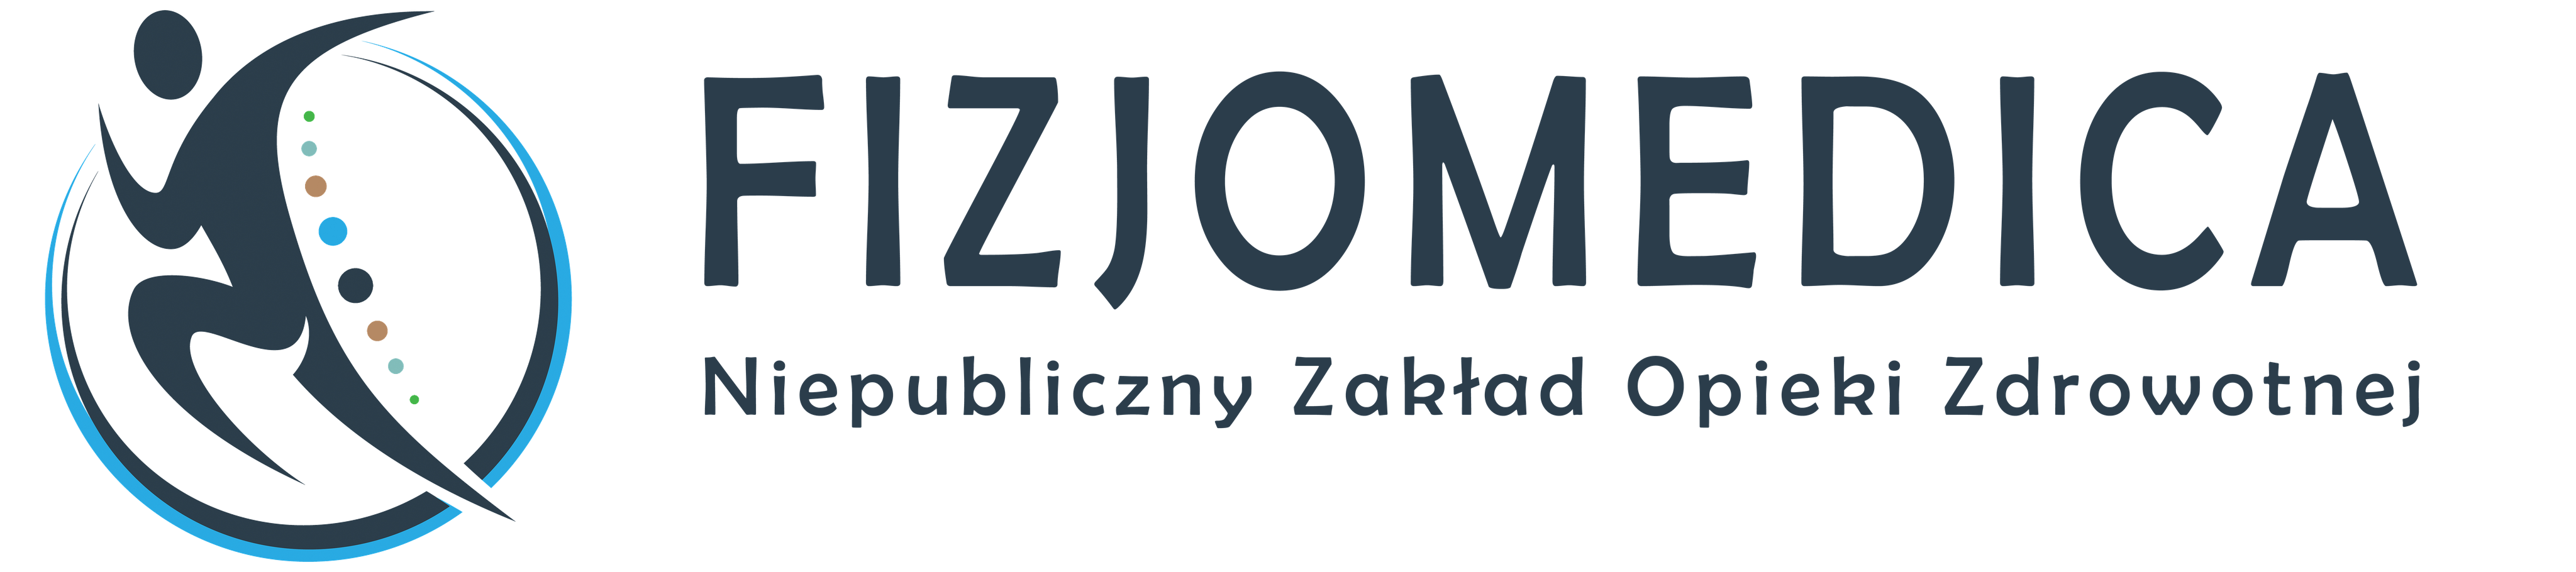 Fizjomedica Szczecin – centrum masażu i rehabilitacji